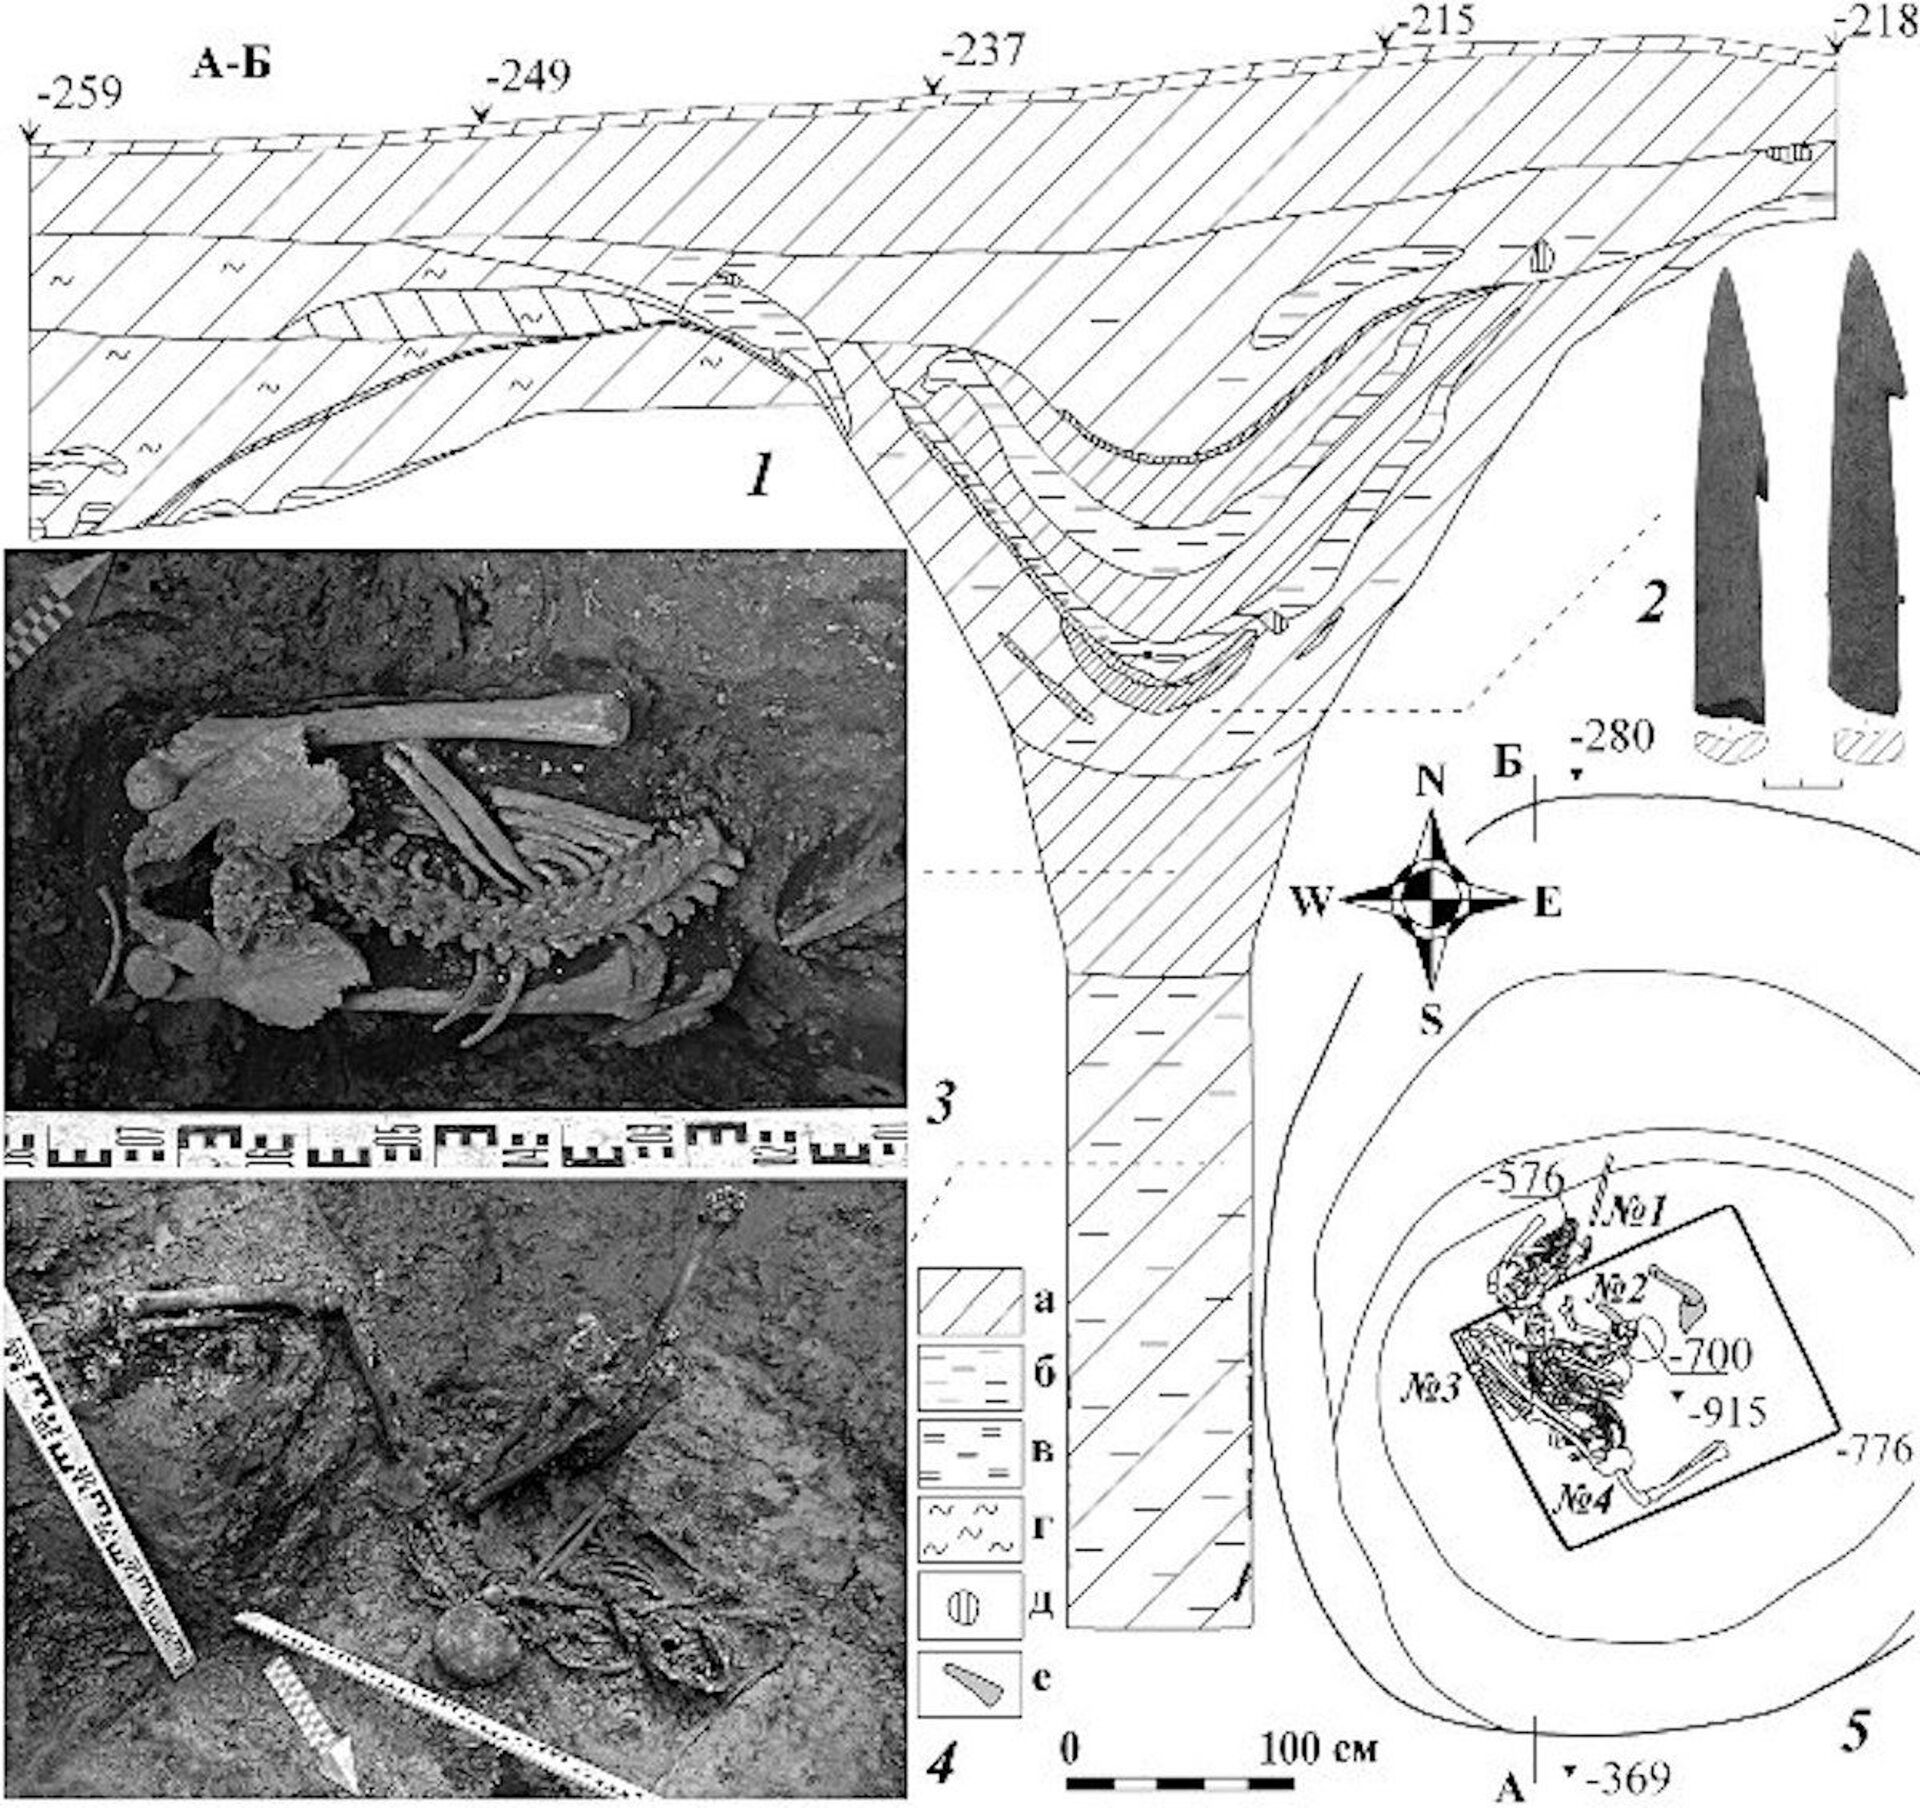 Restos de poço com enterro coletivo encontrado na Rússia - Sputnik Brasil, 1920, 14.12.2021